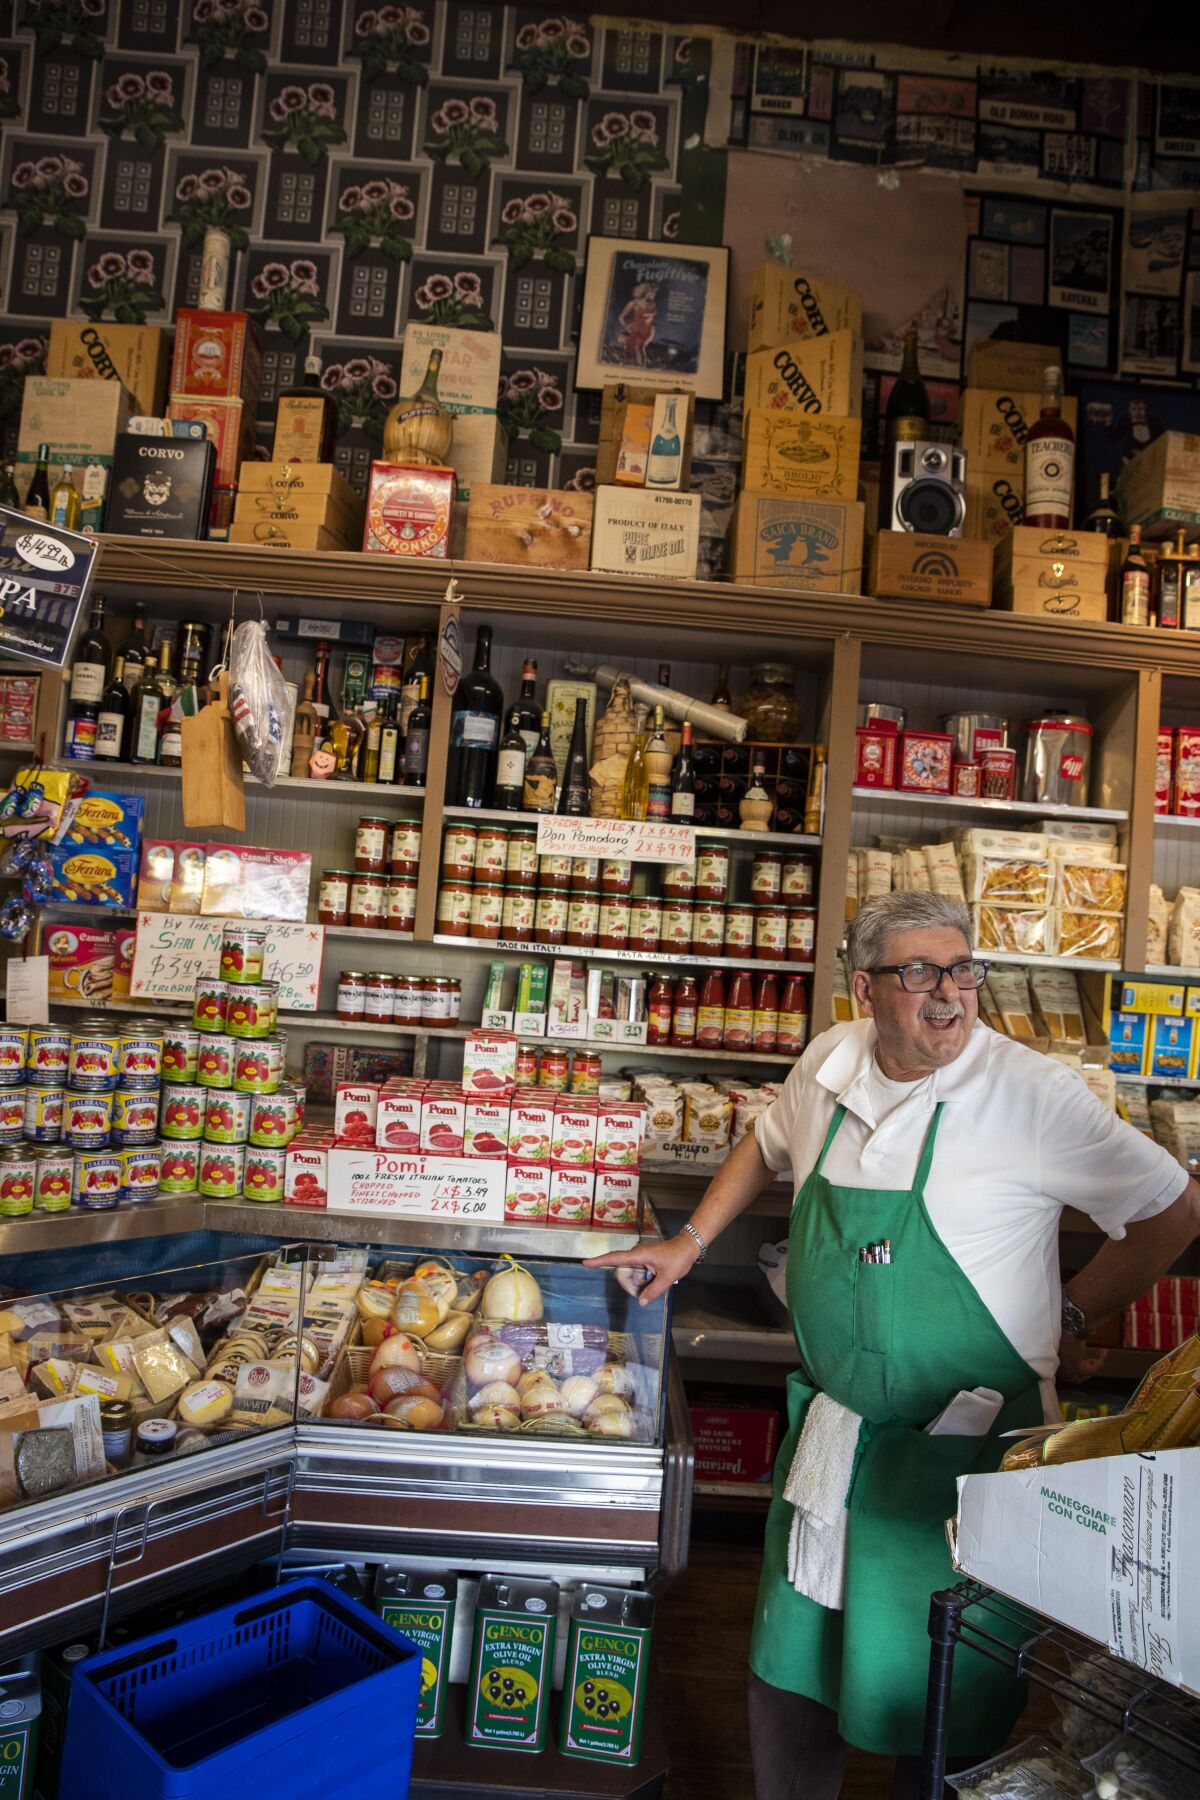 Franco Crivello stands ready to help customers at Molinari Delicatessen.